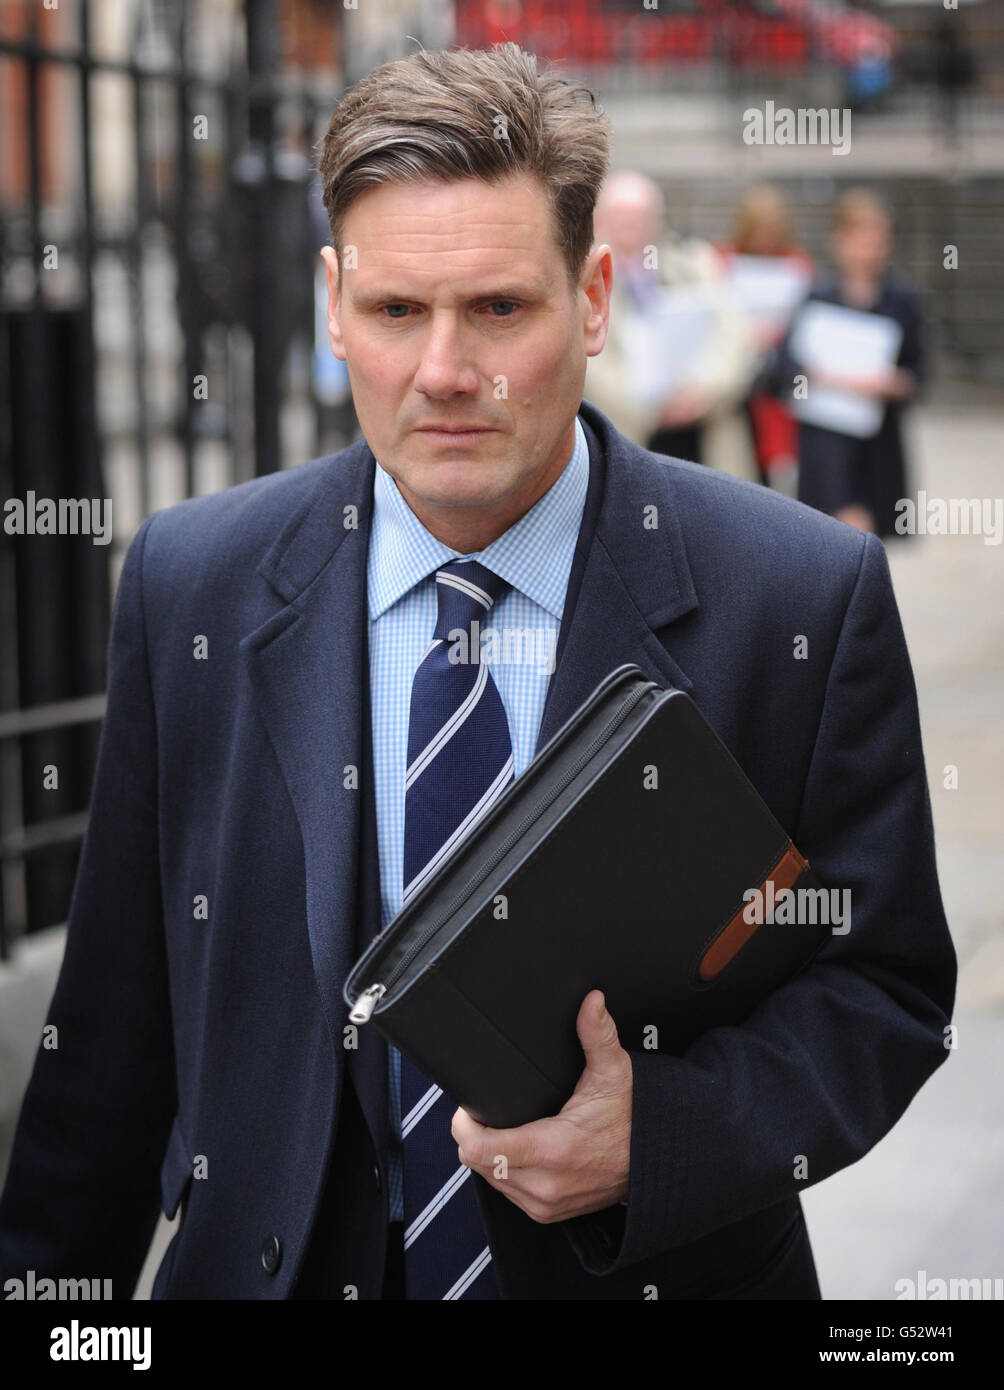 Le directeur des poursuites pénales Keir Starmer quitte la haute Cour à Londres après avoir témoigné à l'enquête Leveson sur les normes de presse. Banque D'Images